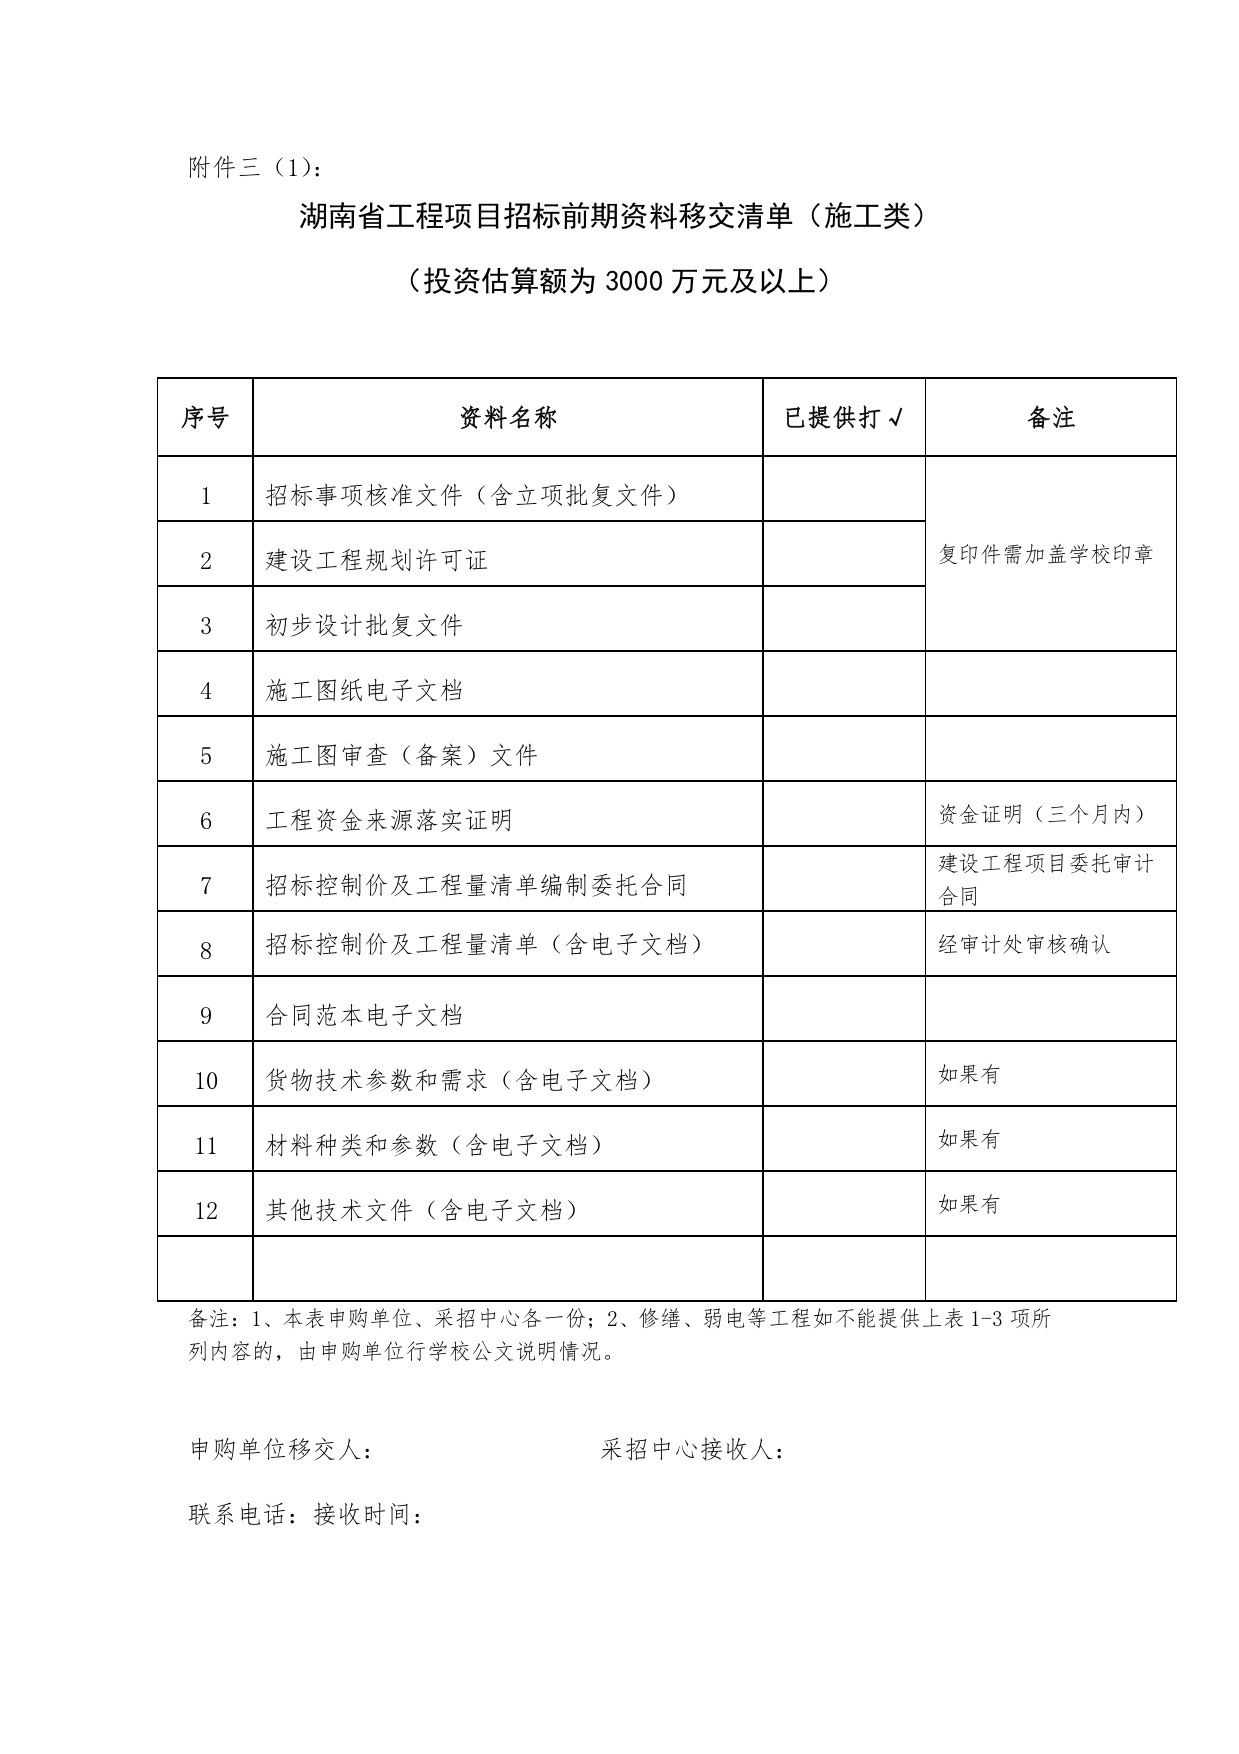 湖南省工程项目招标前期资料移交清单.jpg